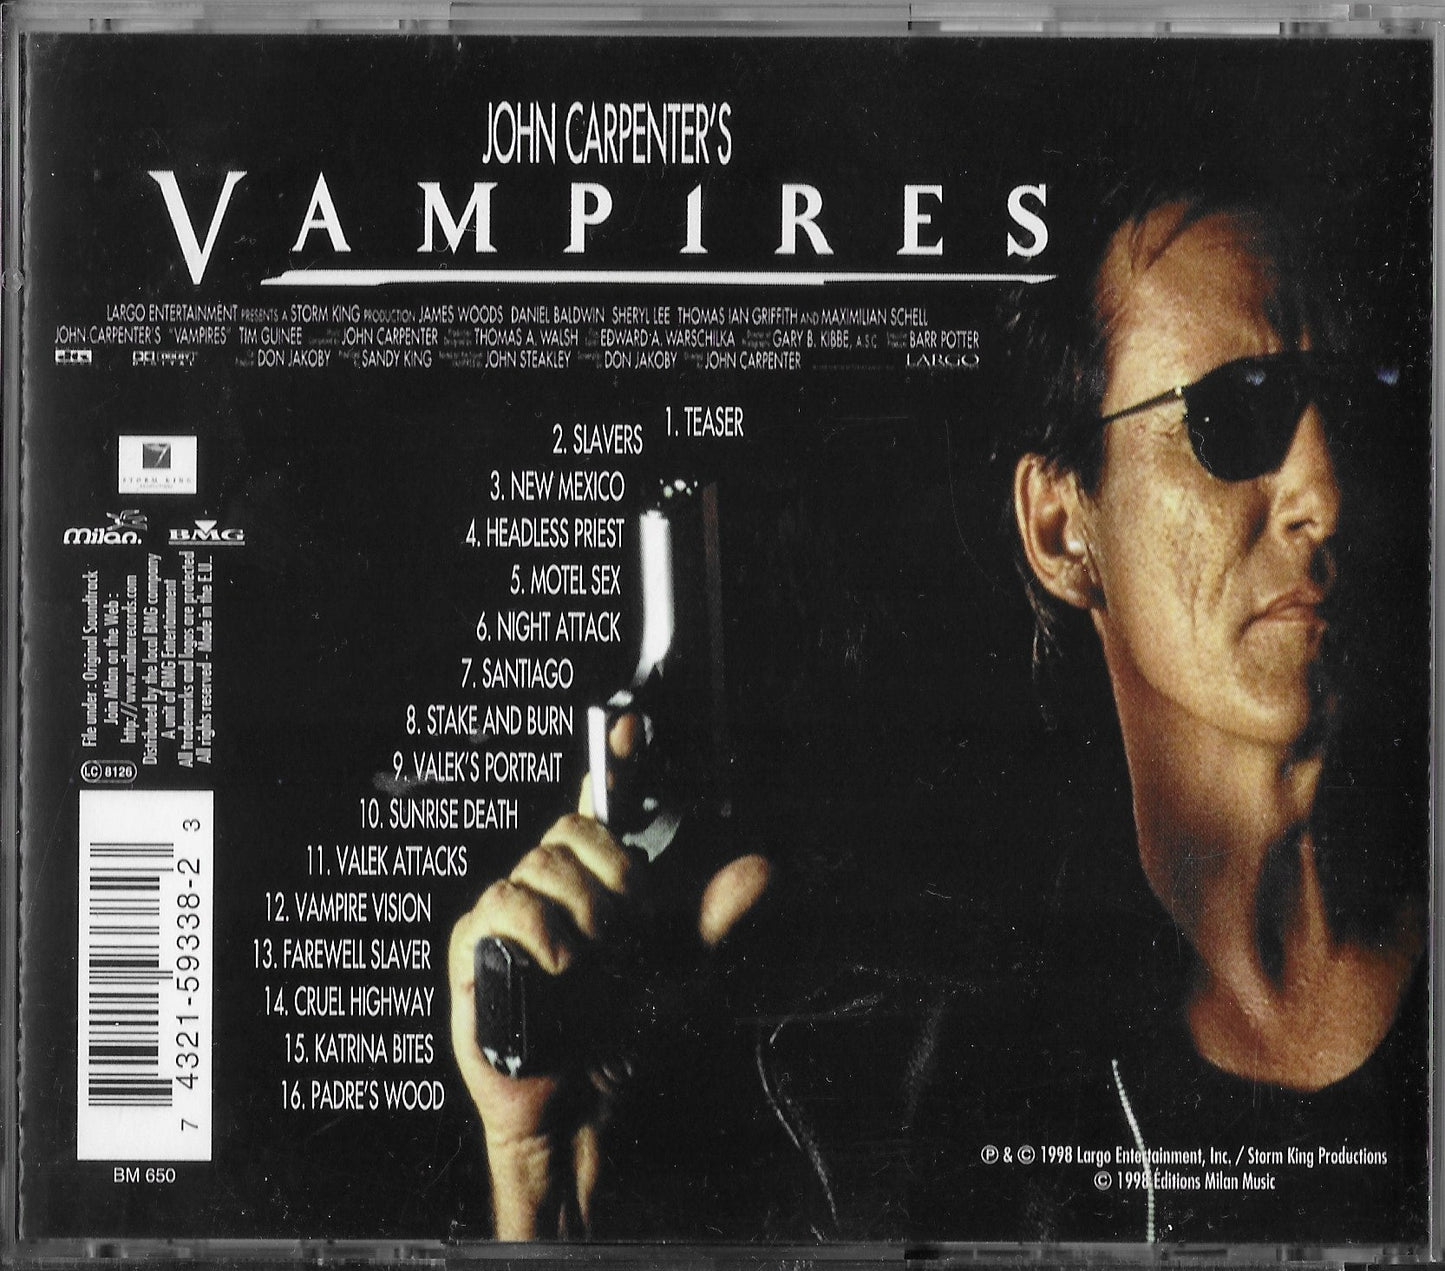 JOHN CARPENTER - Vampires